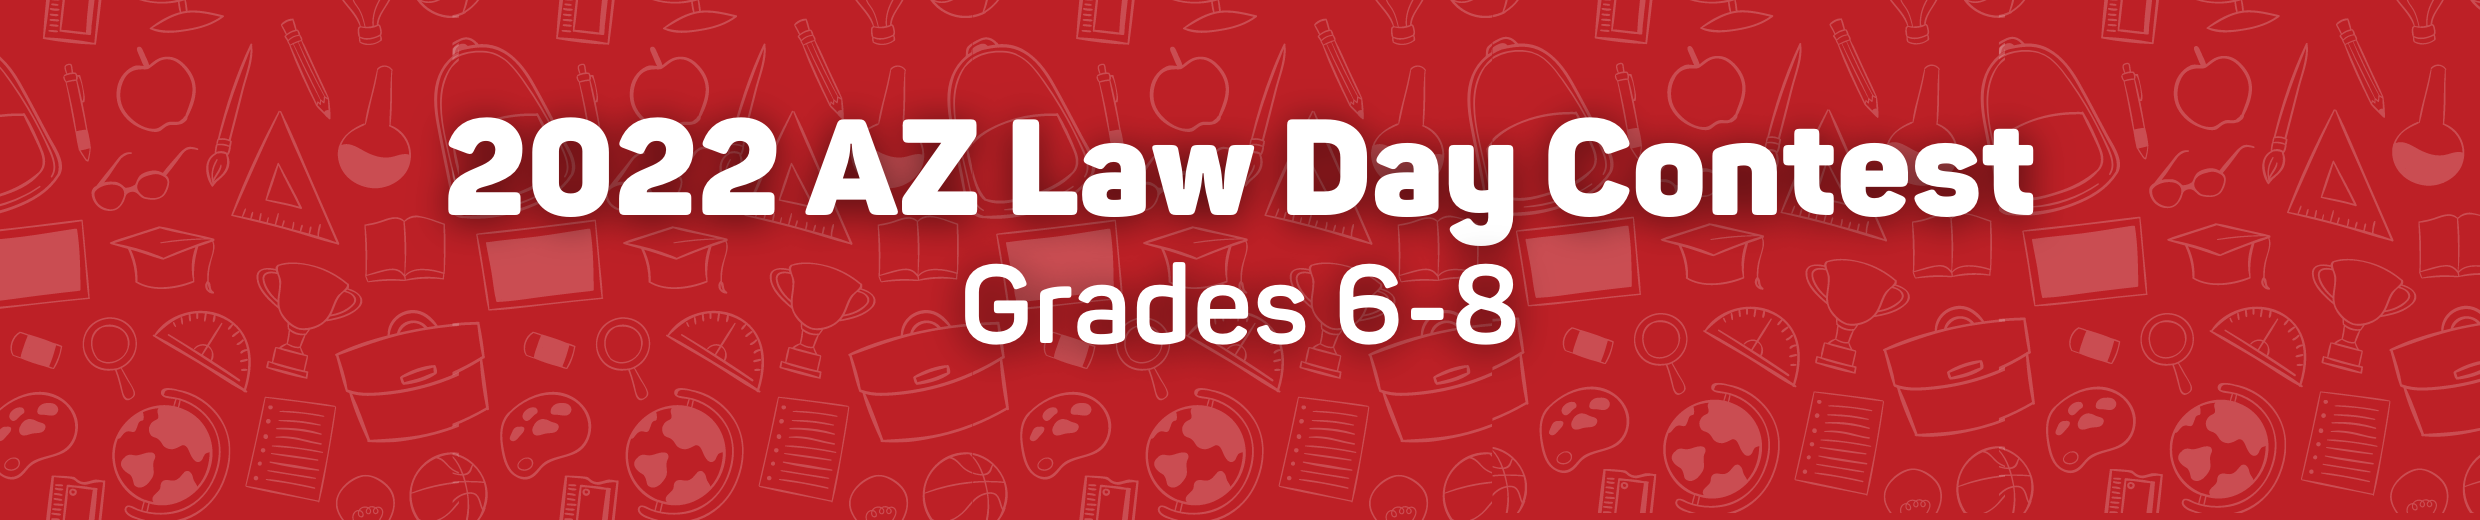 2022 Law Day Contest Grades 6-8